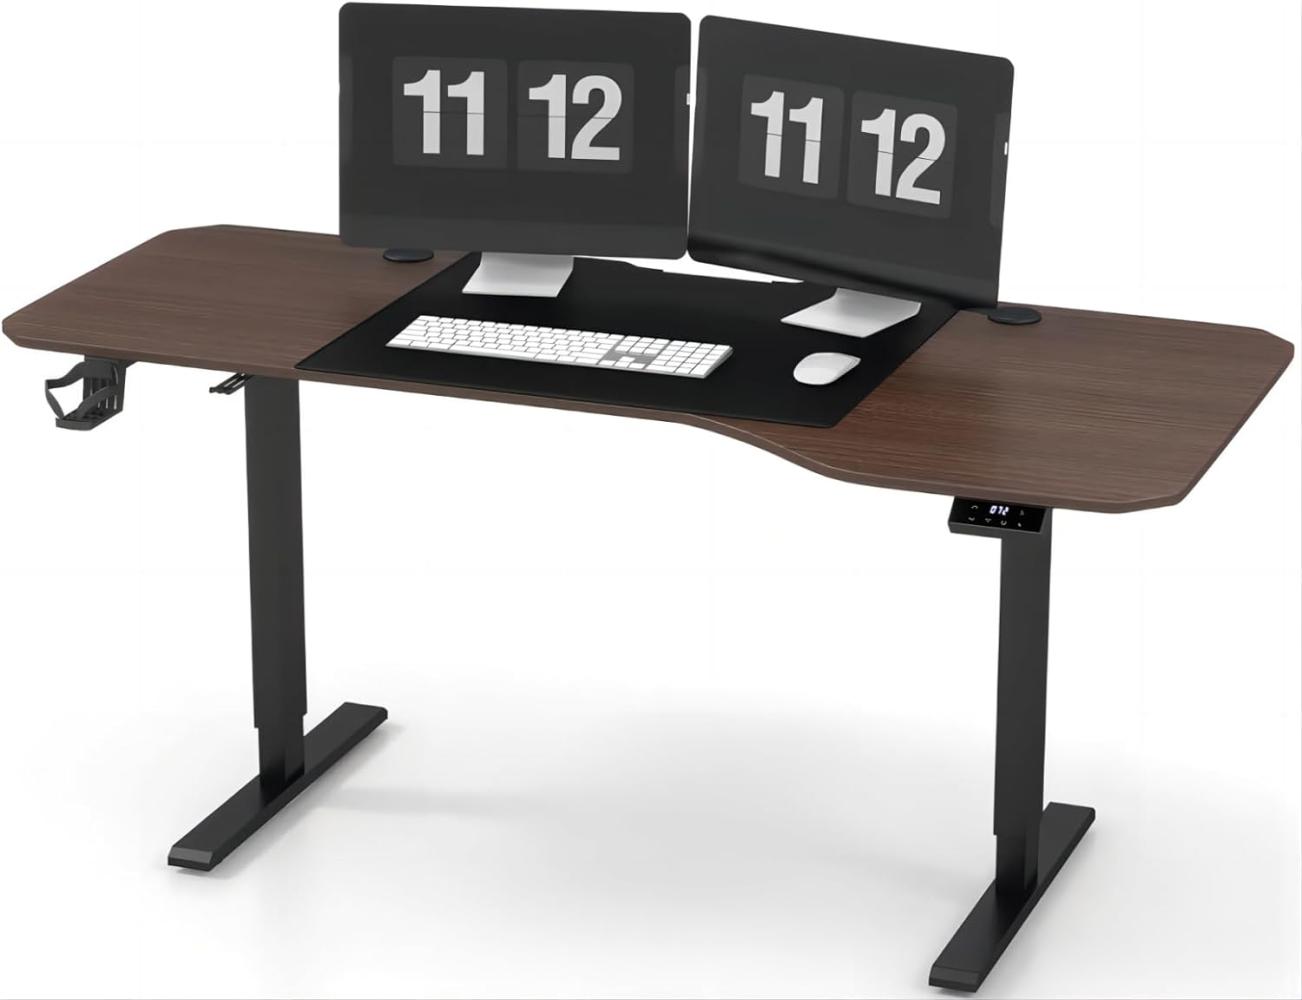 JUMMICO HöHenverstellbarer Schreibtisch 160 cm L-förmiger Schreibtisch Höhenverstellbar Elektrisch,Ergonomie Gaming Tisch mit Becherhalter, Haken (Walnuss) Bild 1